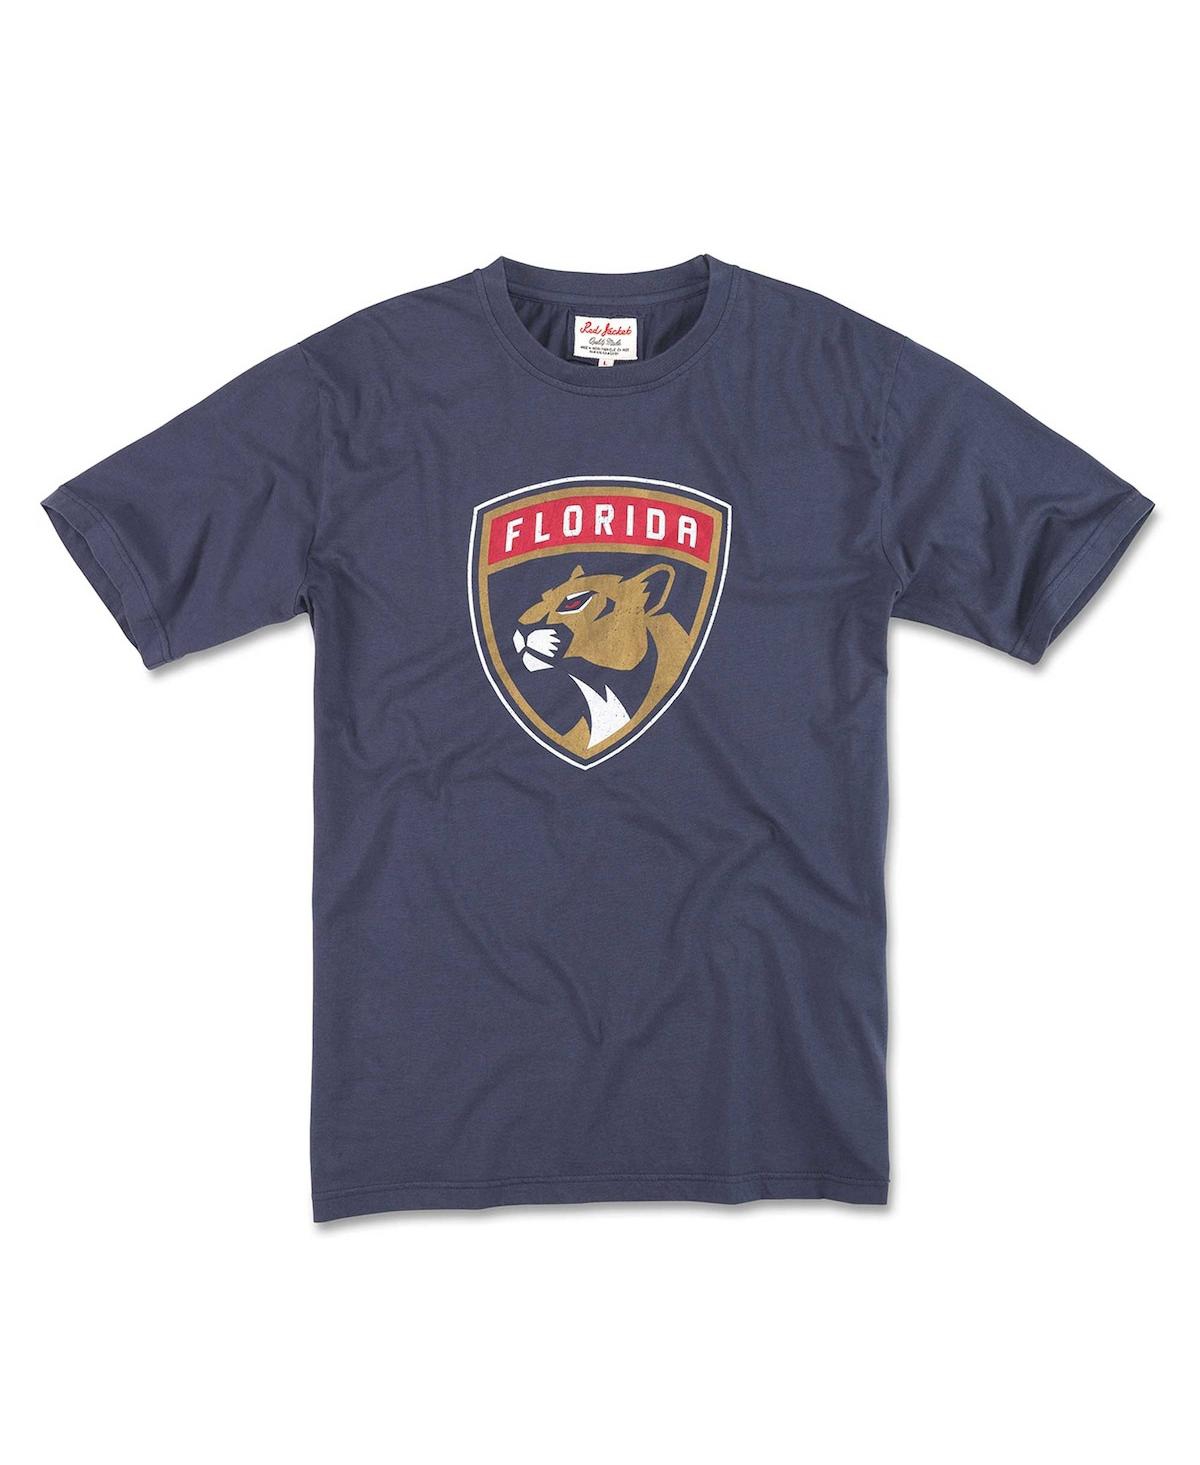 Men's Navy Florida Panthers Brass Tacks T-Shirt - Navy